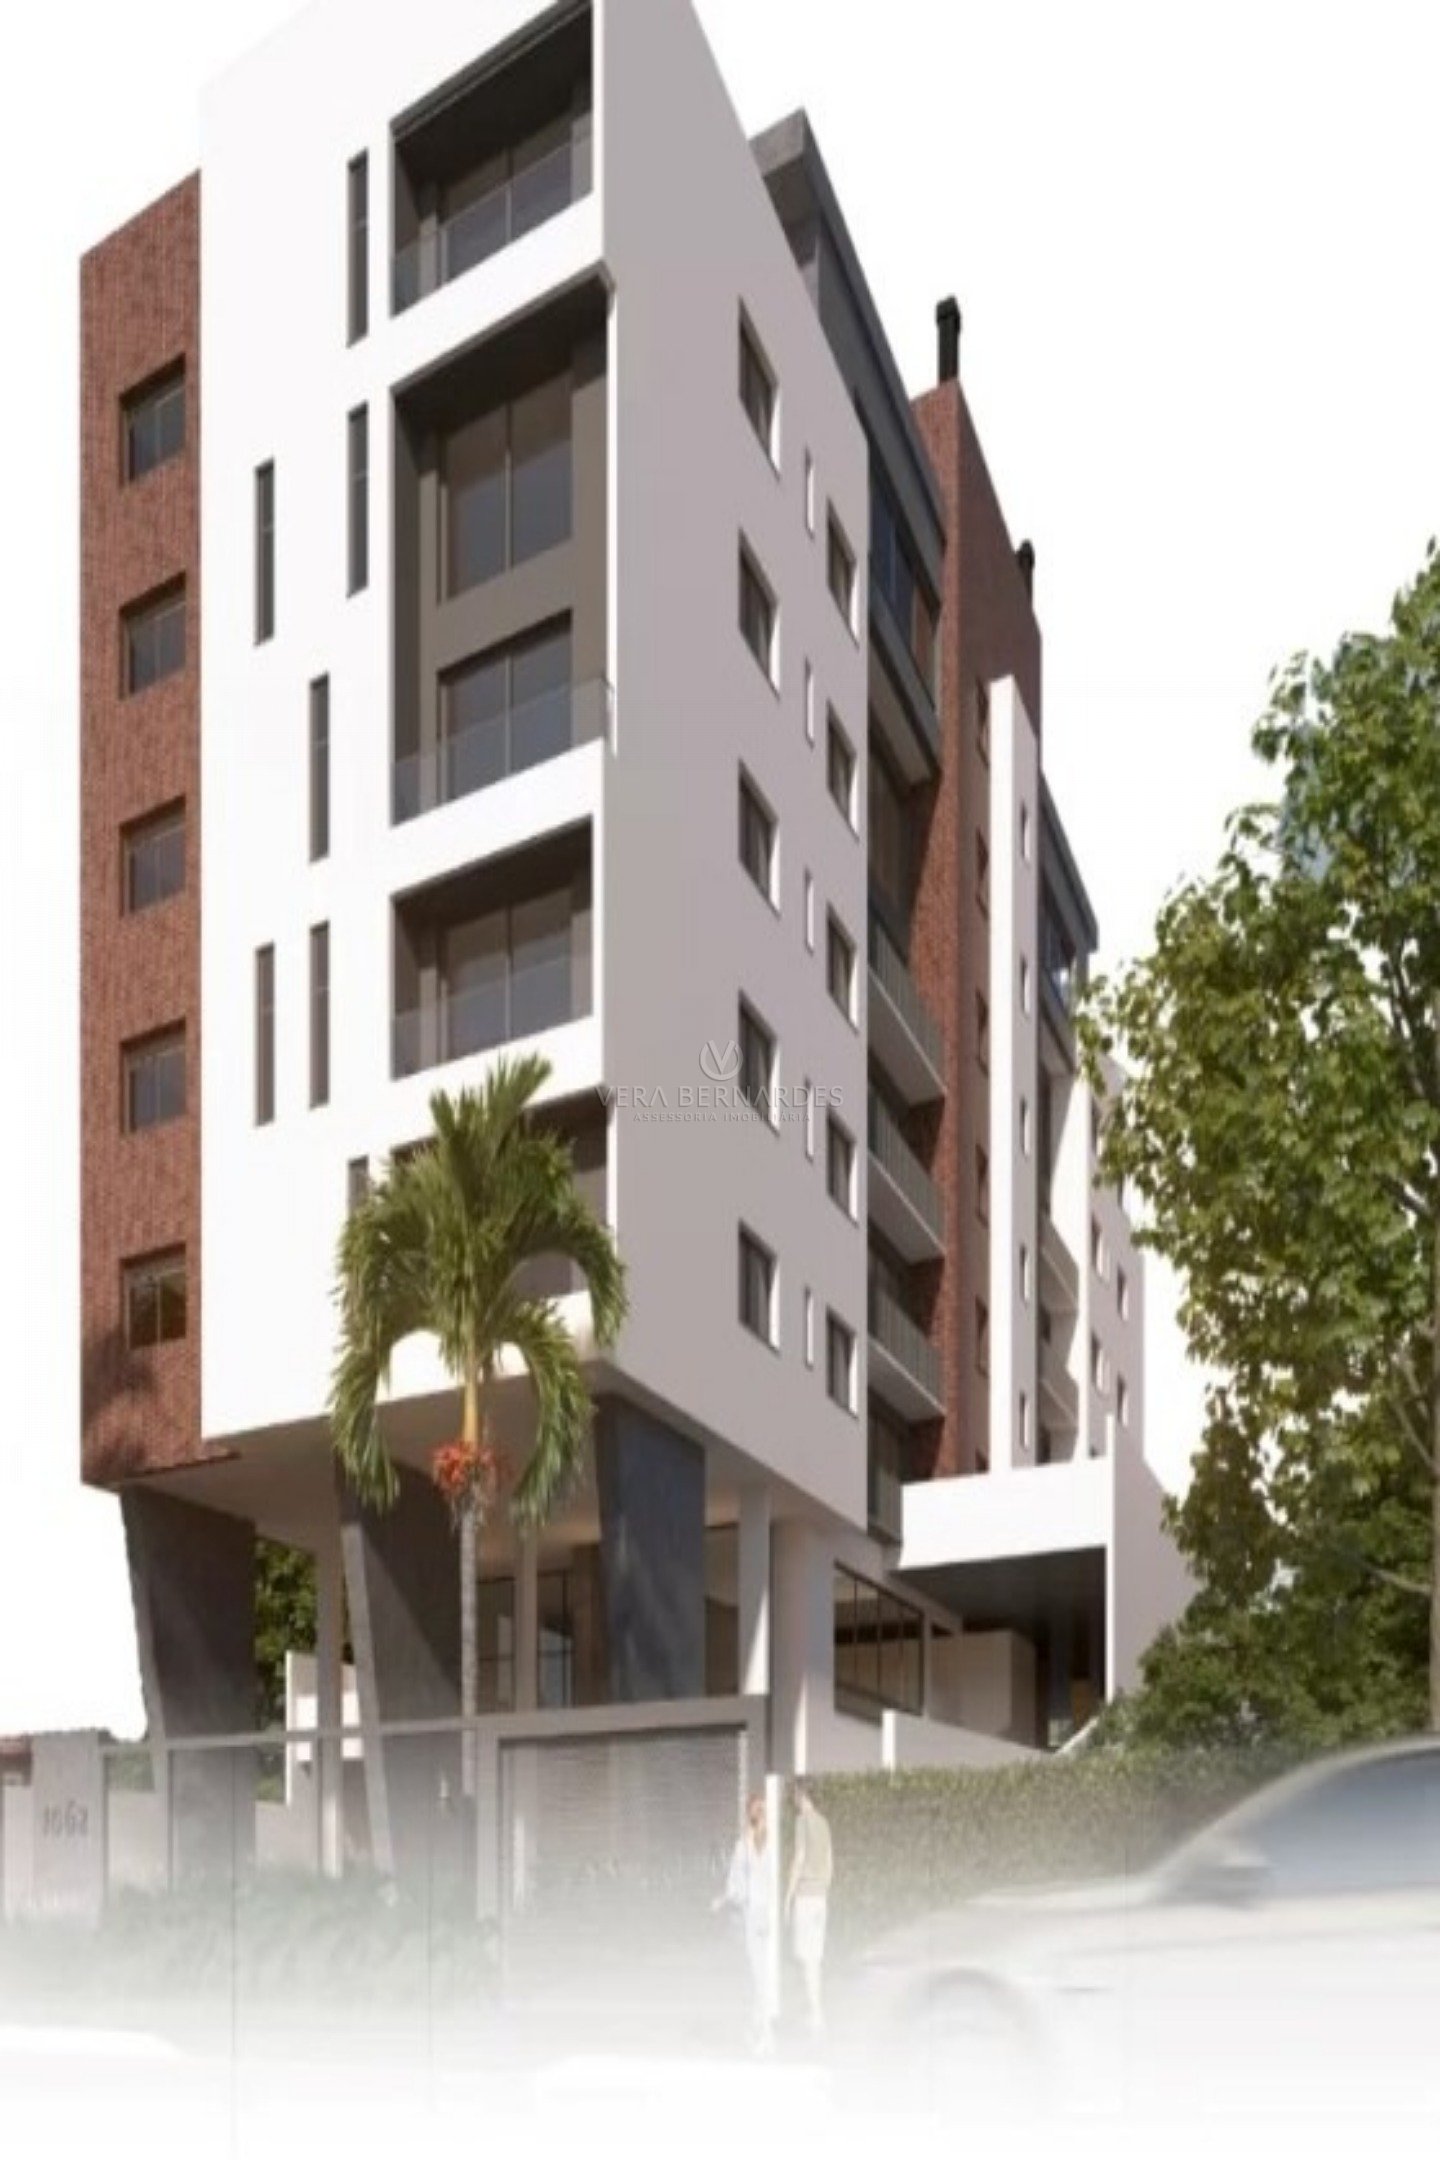 Apartamento Garden à venda com 3 dormitórios, 156m² e 2 vagas no bairro Cristal, Zona Sul de Porto Alegre